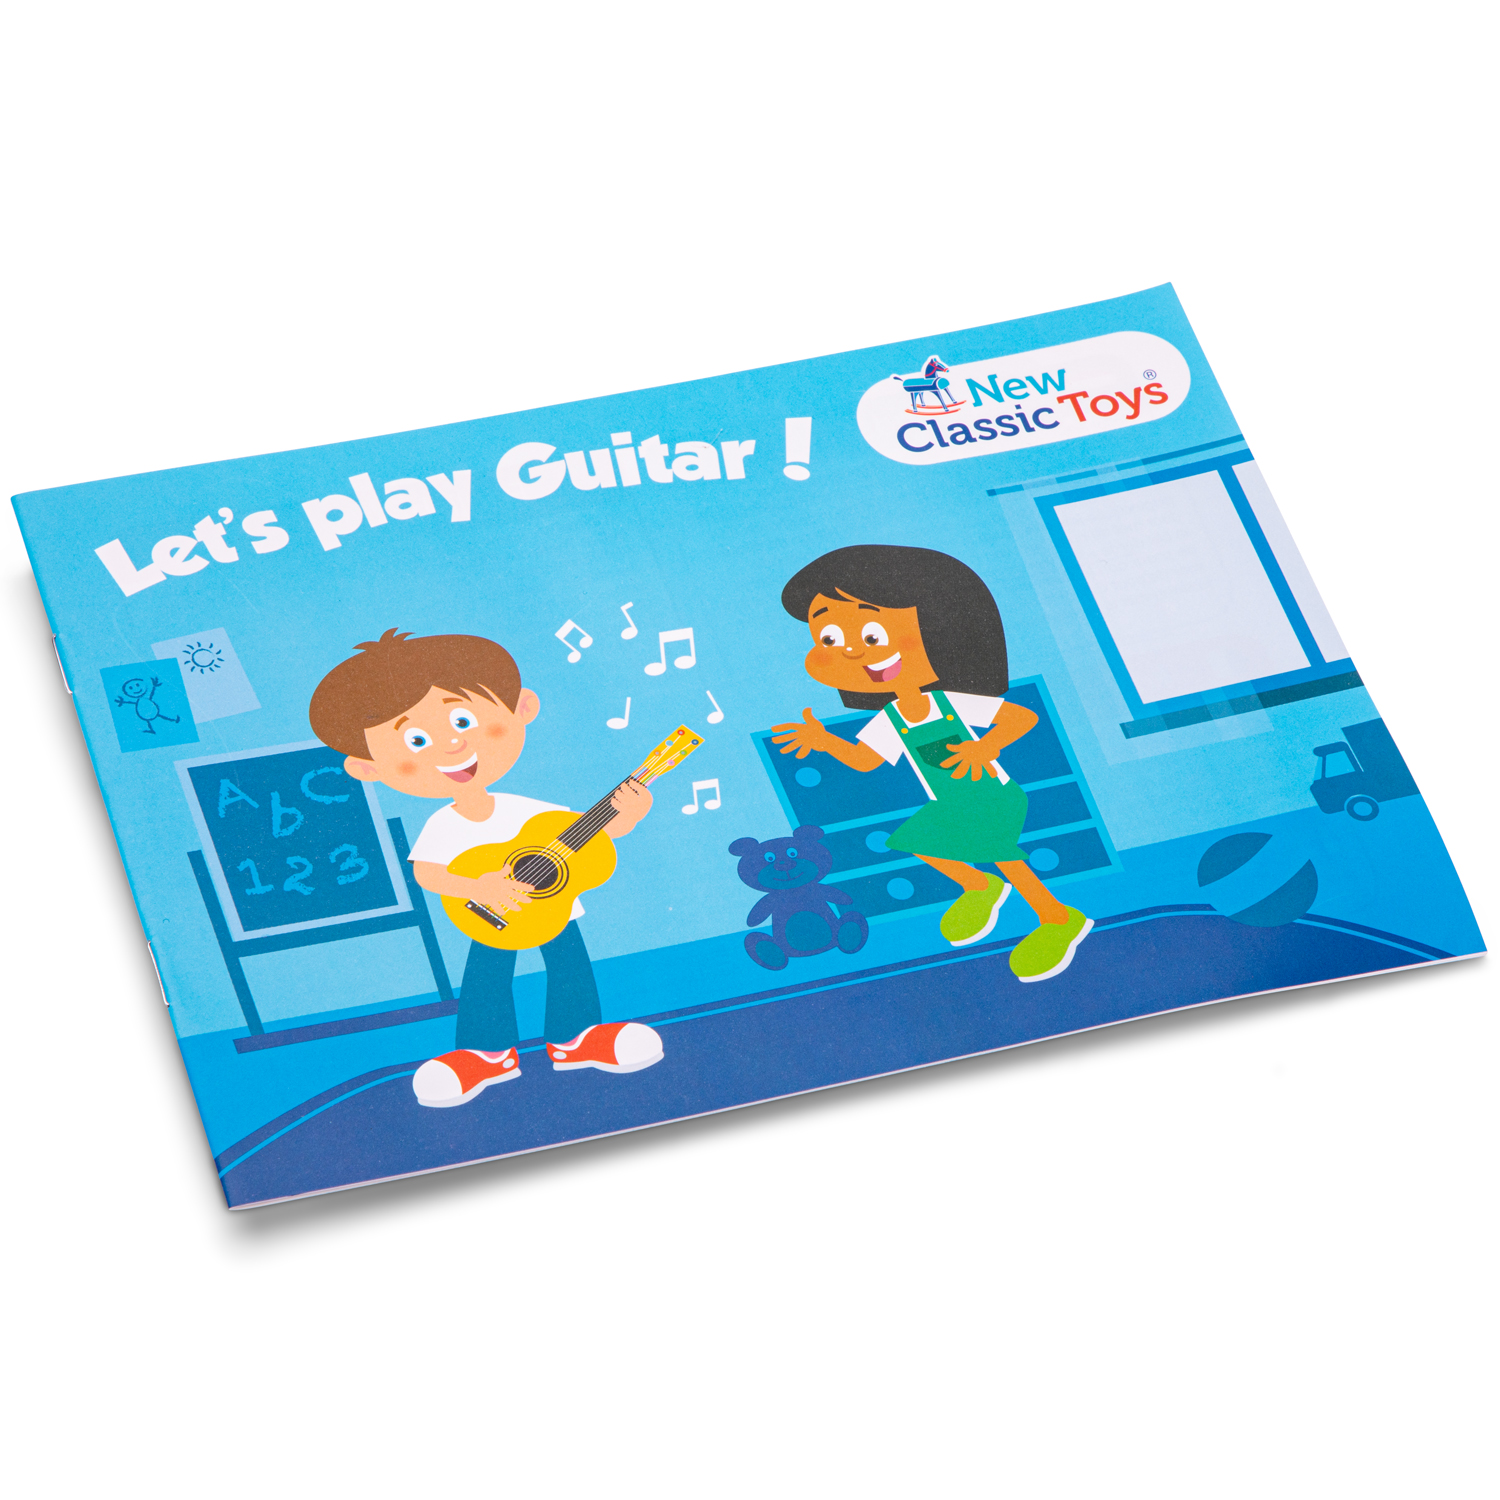 Gitarre pink mit Blumen Kindergitarre Kinder-Instrument Musikspielzeug